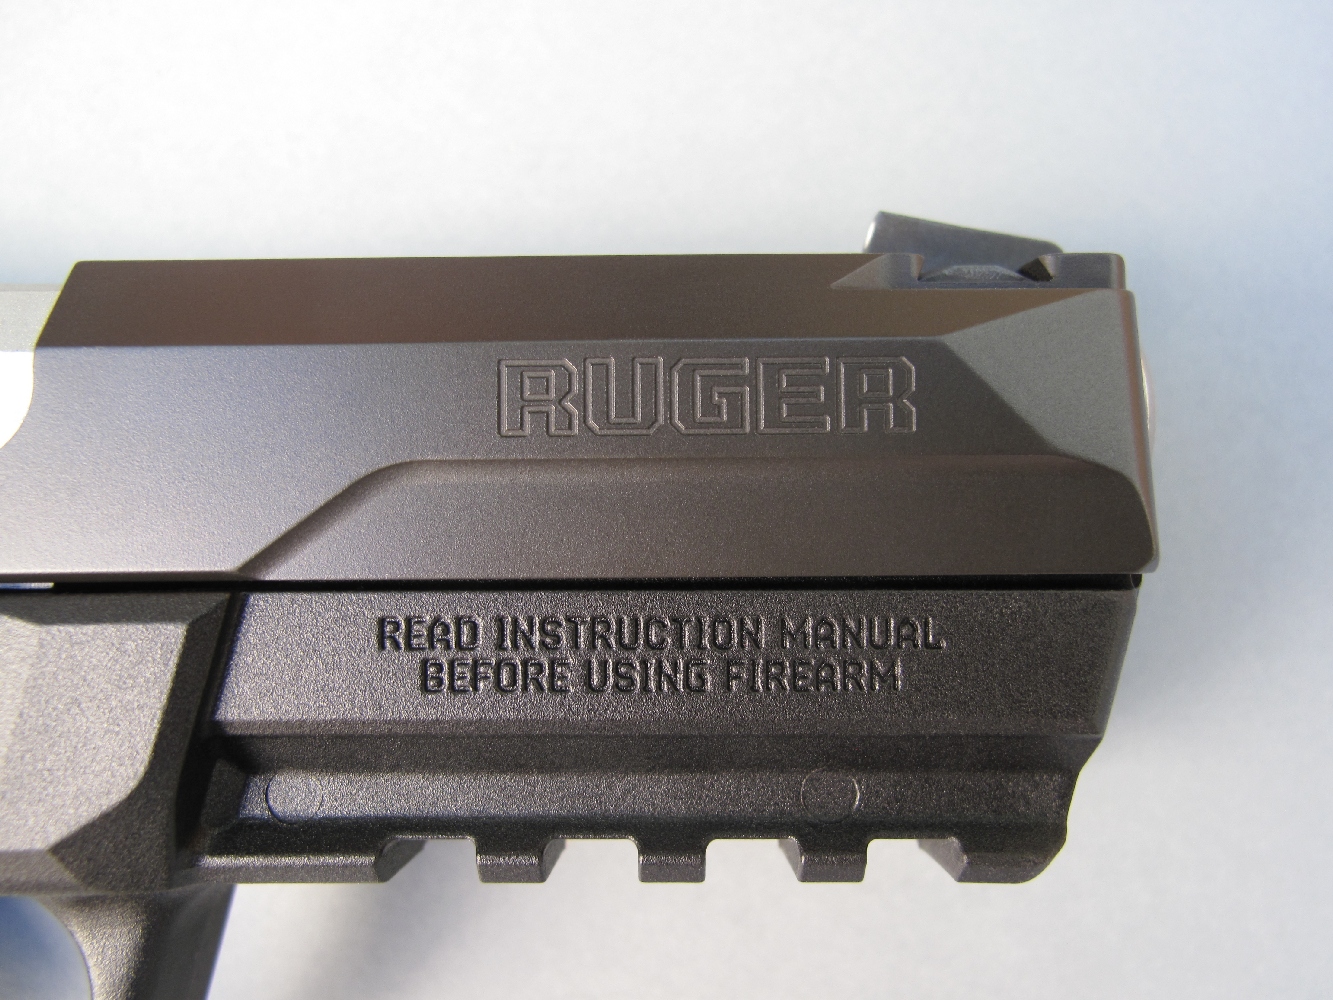 Le nom commercial de son fabricant, la firme américaine Sturm, Ruger & Co, de même que les habituels avertissements liés à la sécurité d’utilisation dont clairement visibles de chaque côté de l’arme.